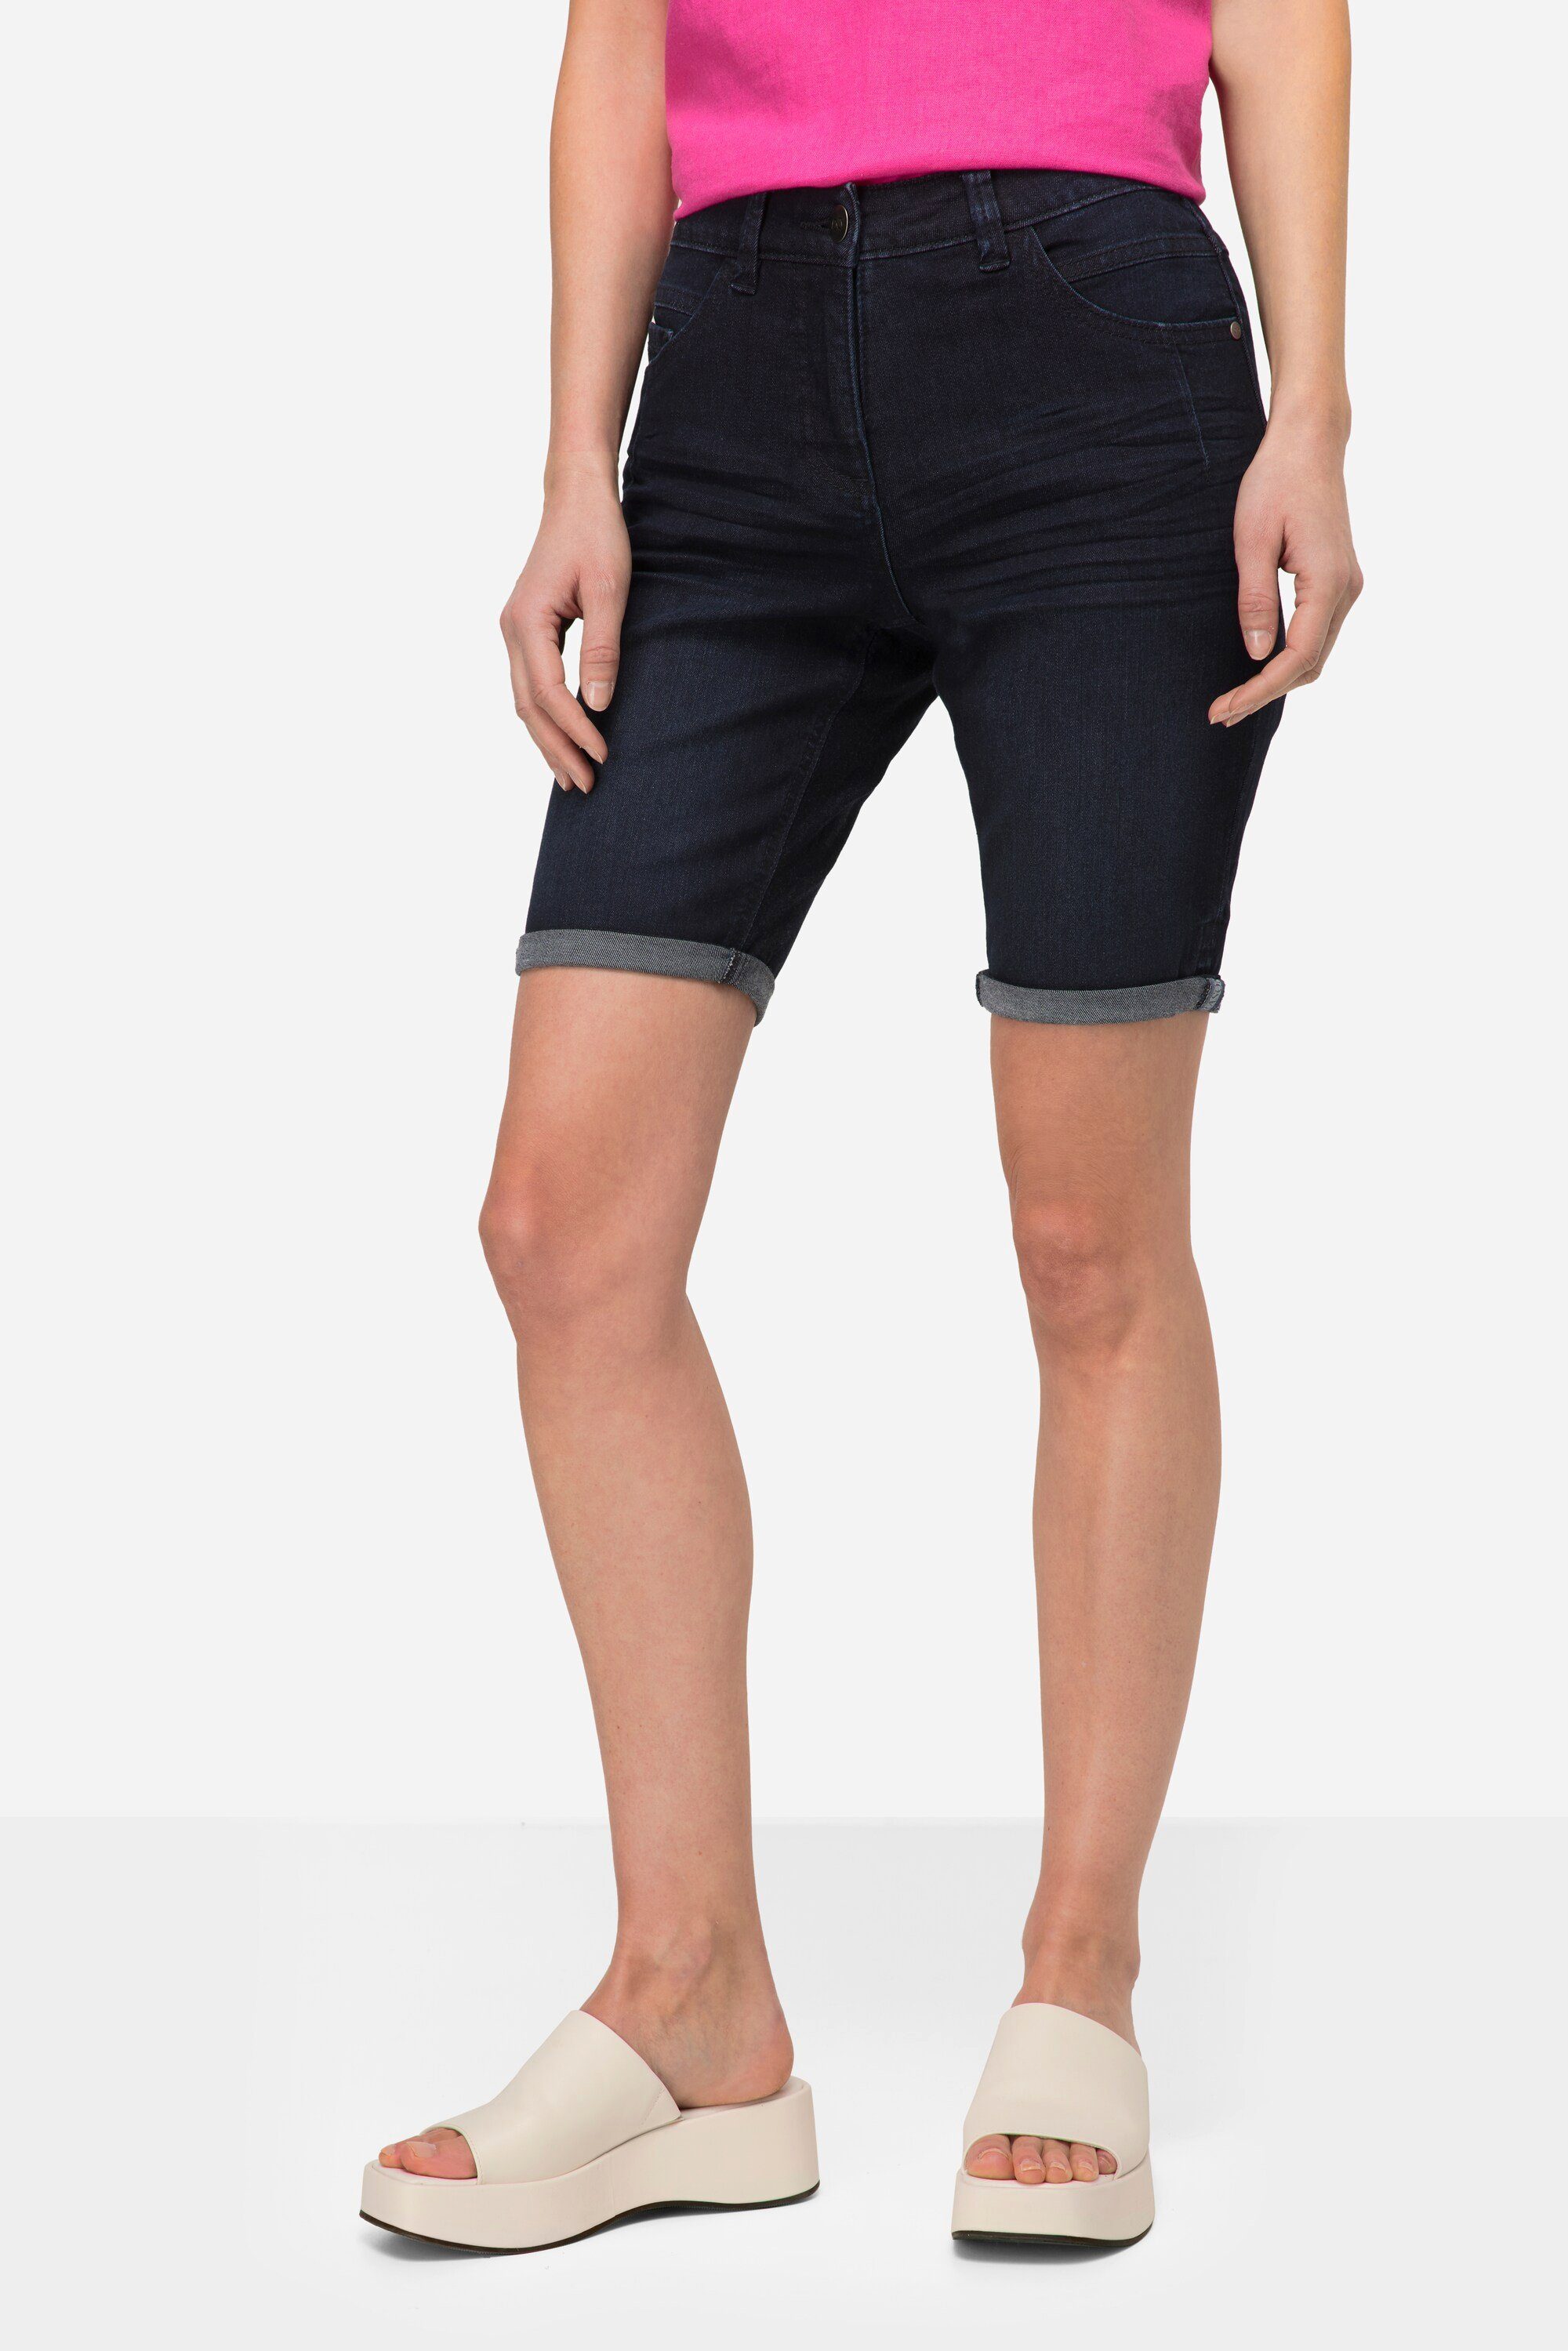 Laurasøn Regular-fit-Jeans Jeans-Shorts 5-Pocket Elastikbund dark blue denim